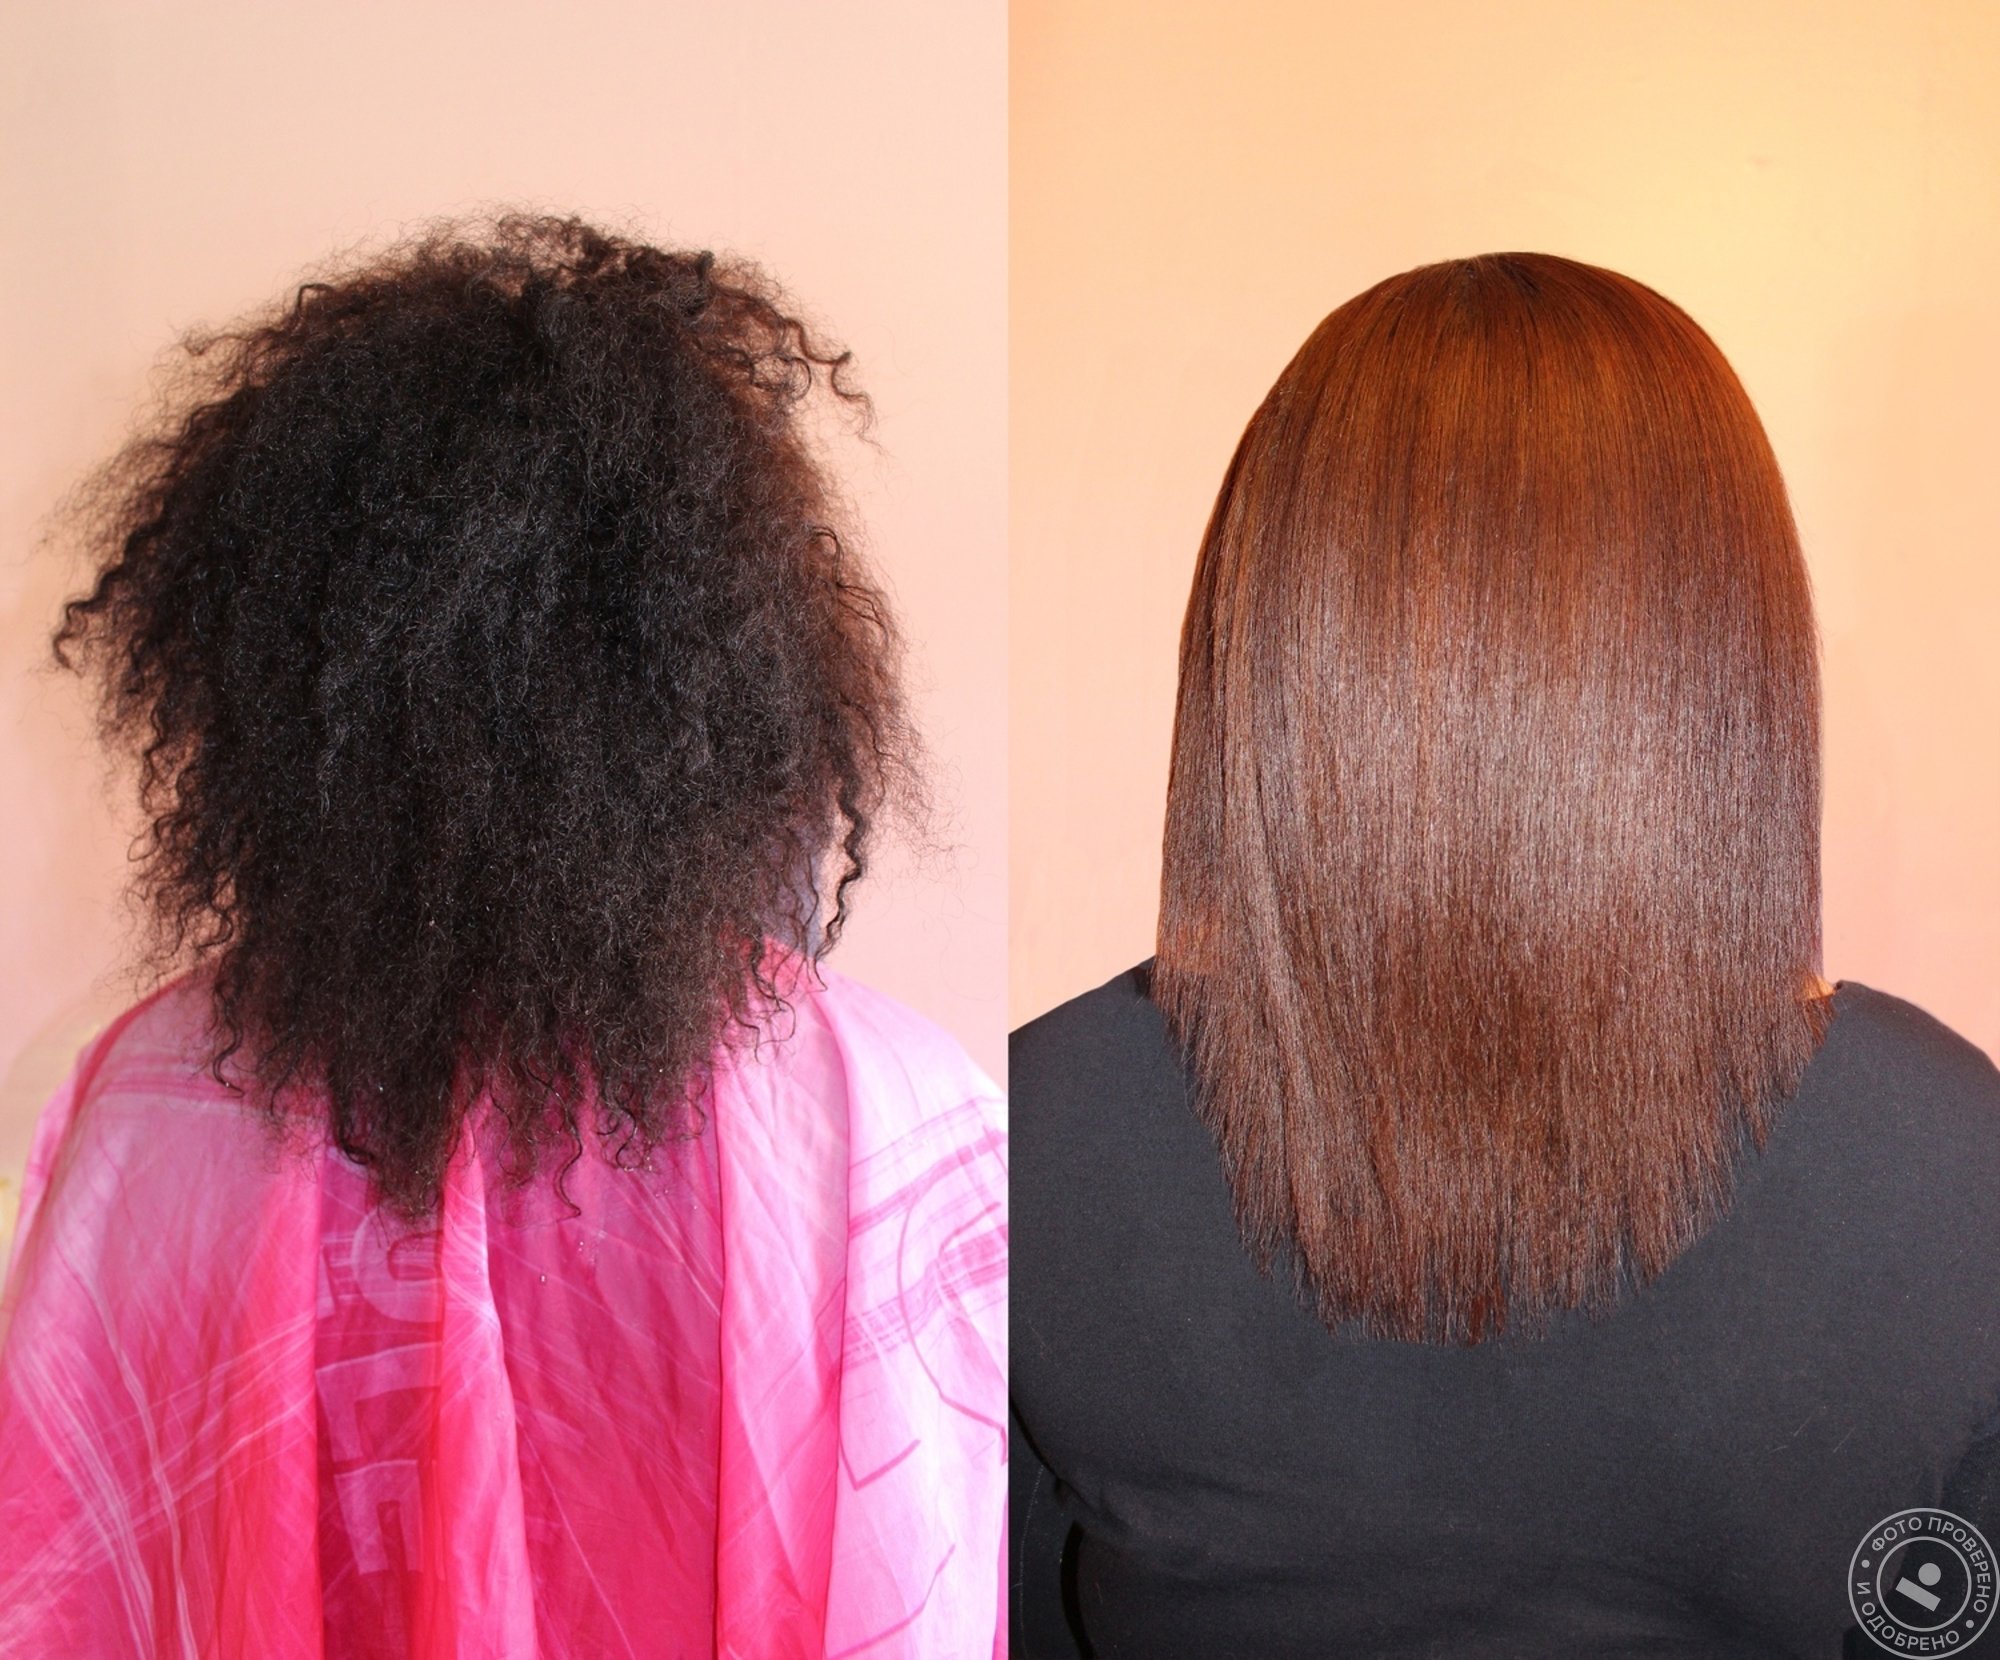 Волосы после кератинового выпрямления. Выпрямление волос до и после. Кератиновое выпрямление на густые волосы. Кератиновое выпрямление волос средней длины. Уход после выпрямления волос